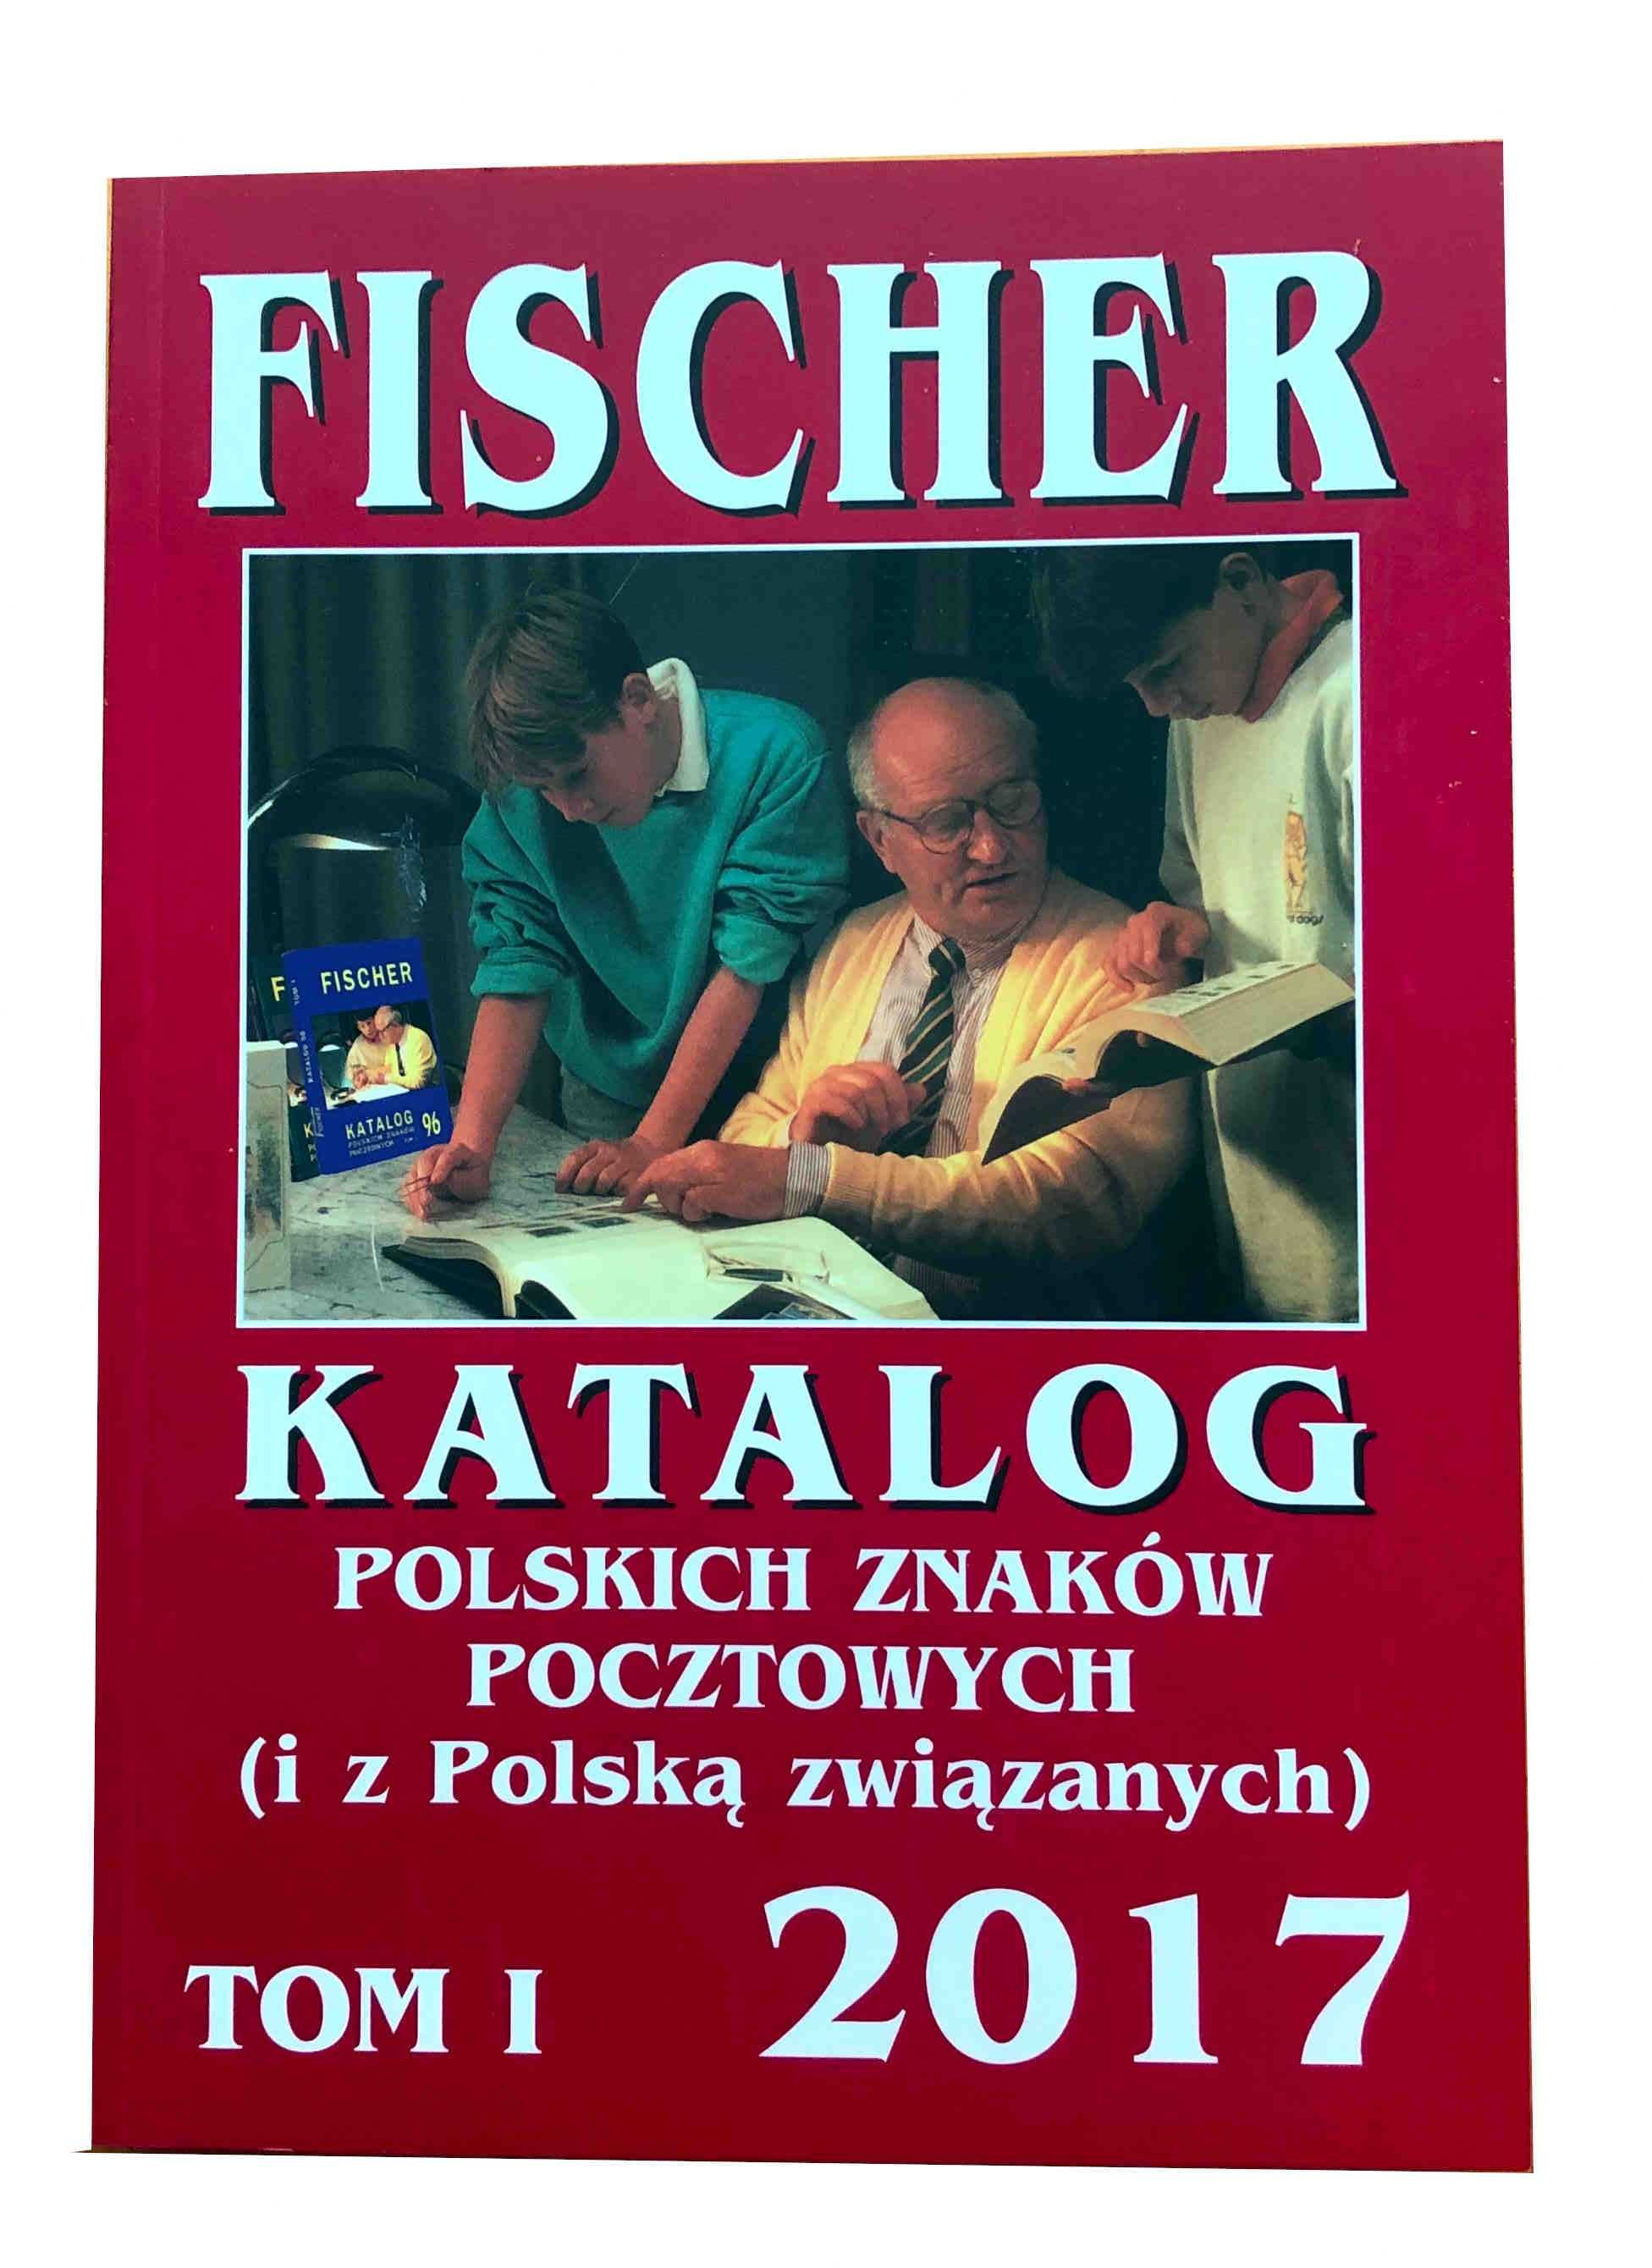 Katalog znaczków Fischer tom I z 2017 roku